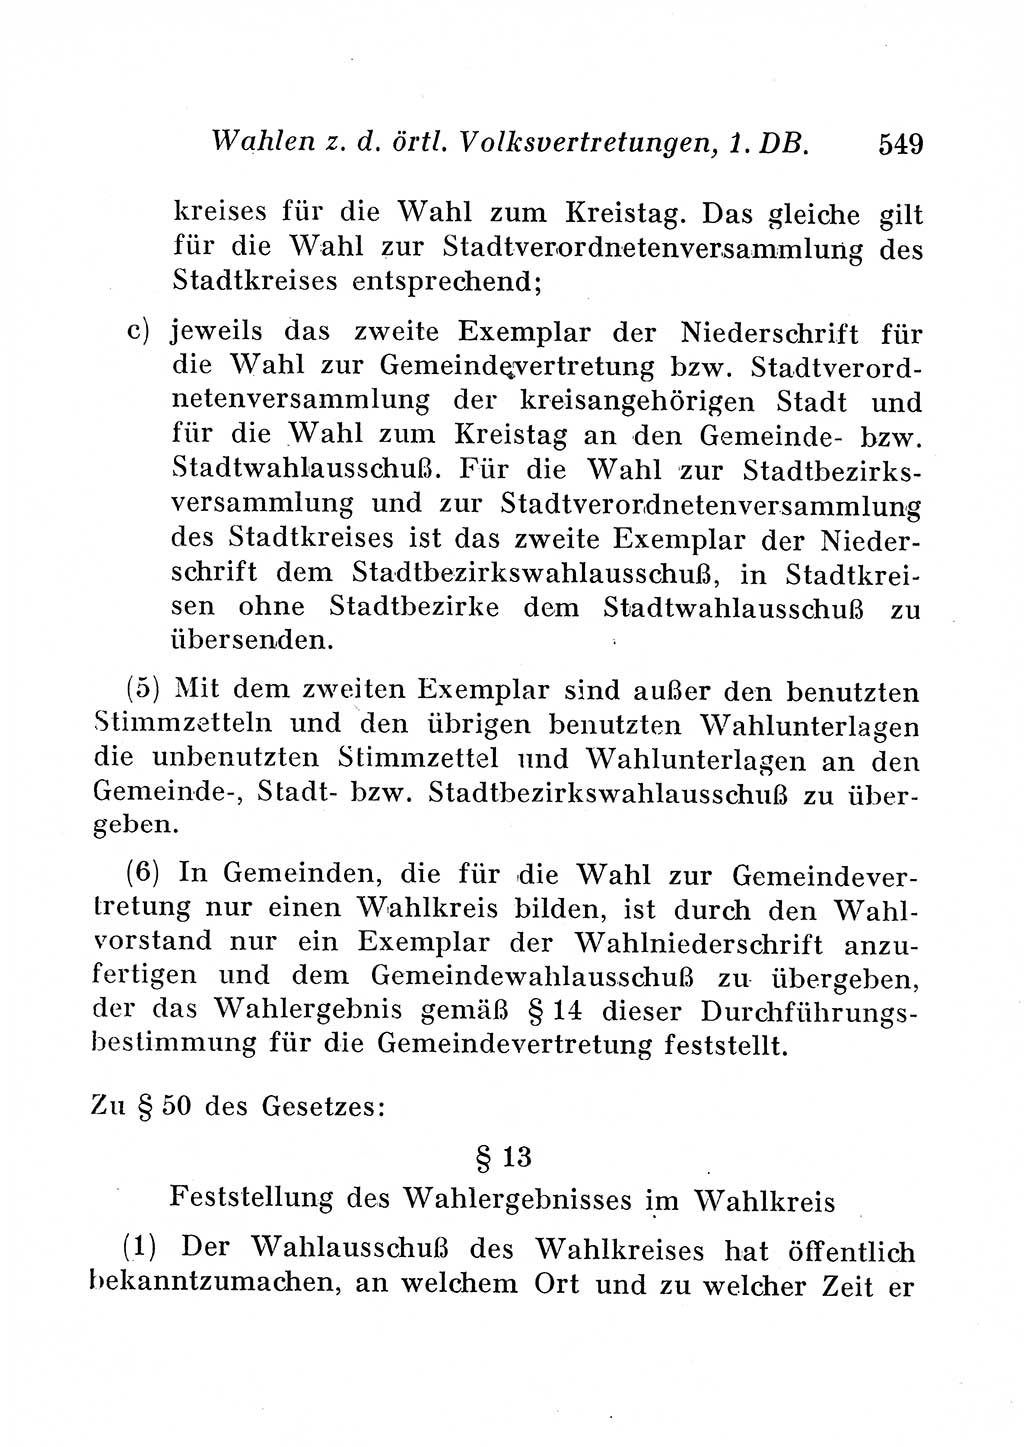 Staats- und verwaltungsrechtliche Gesetze der Deutschen Demokratischen Republik (DDR) 1958, Seite 549 (StVerwR Ges. DDR 1958, S. 549)